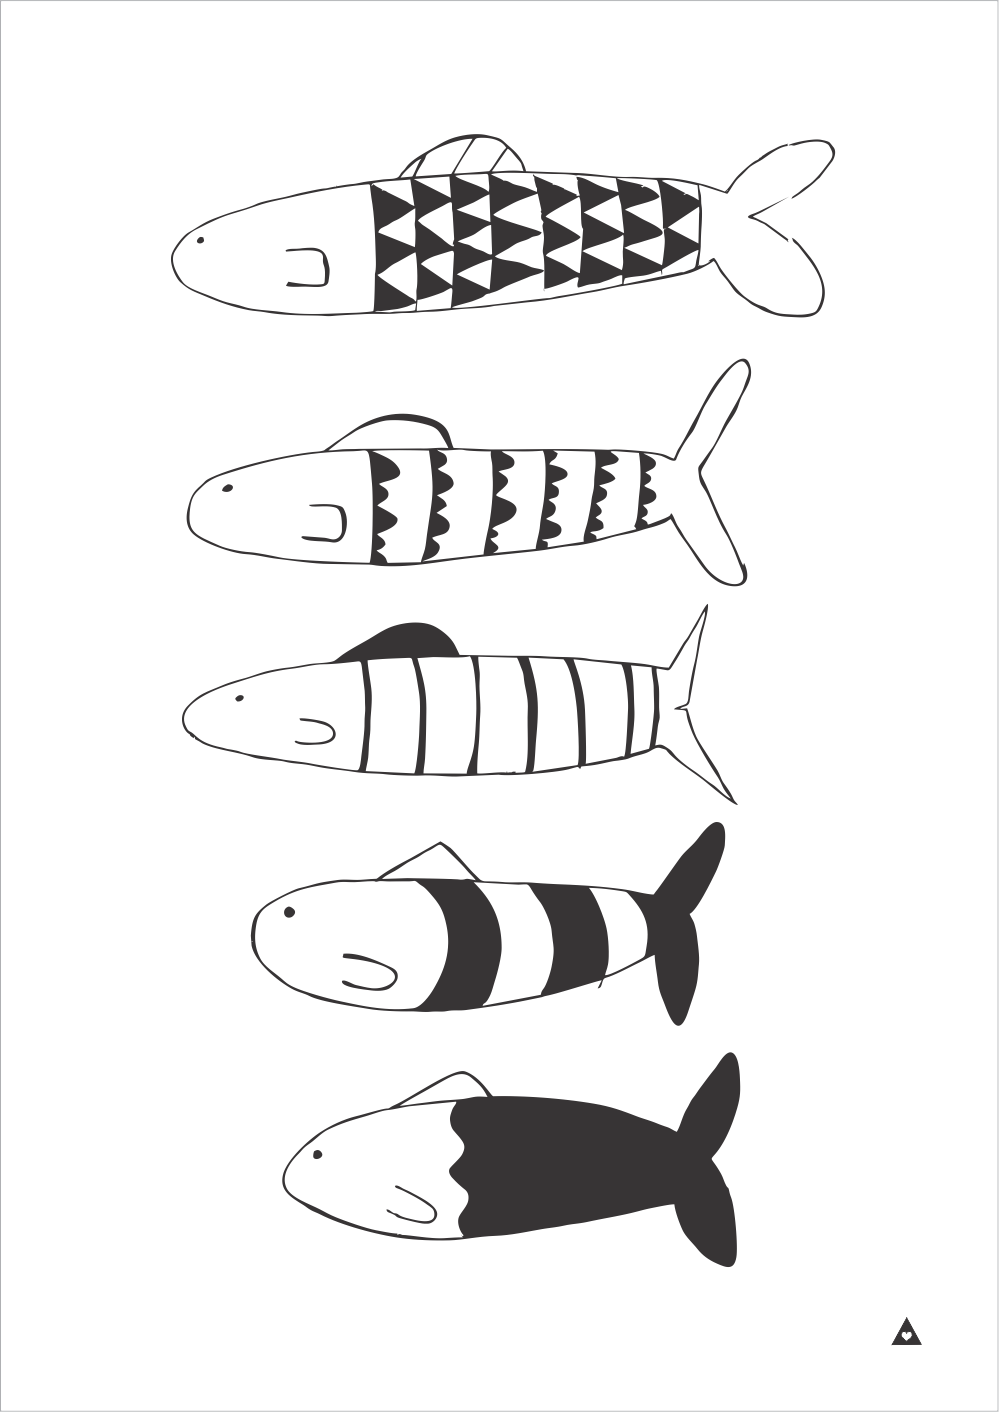 Fish Art Print - Wall decals - 100 Percent Heart 